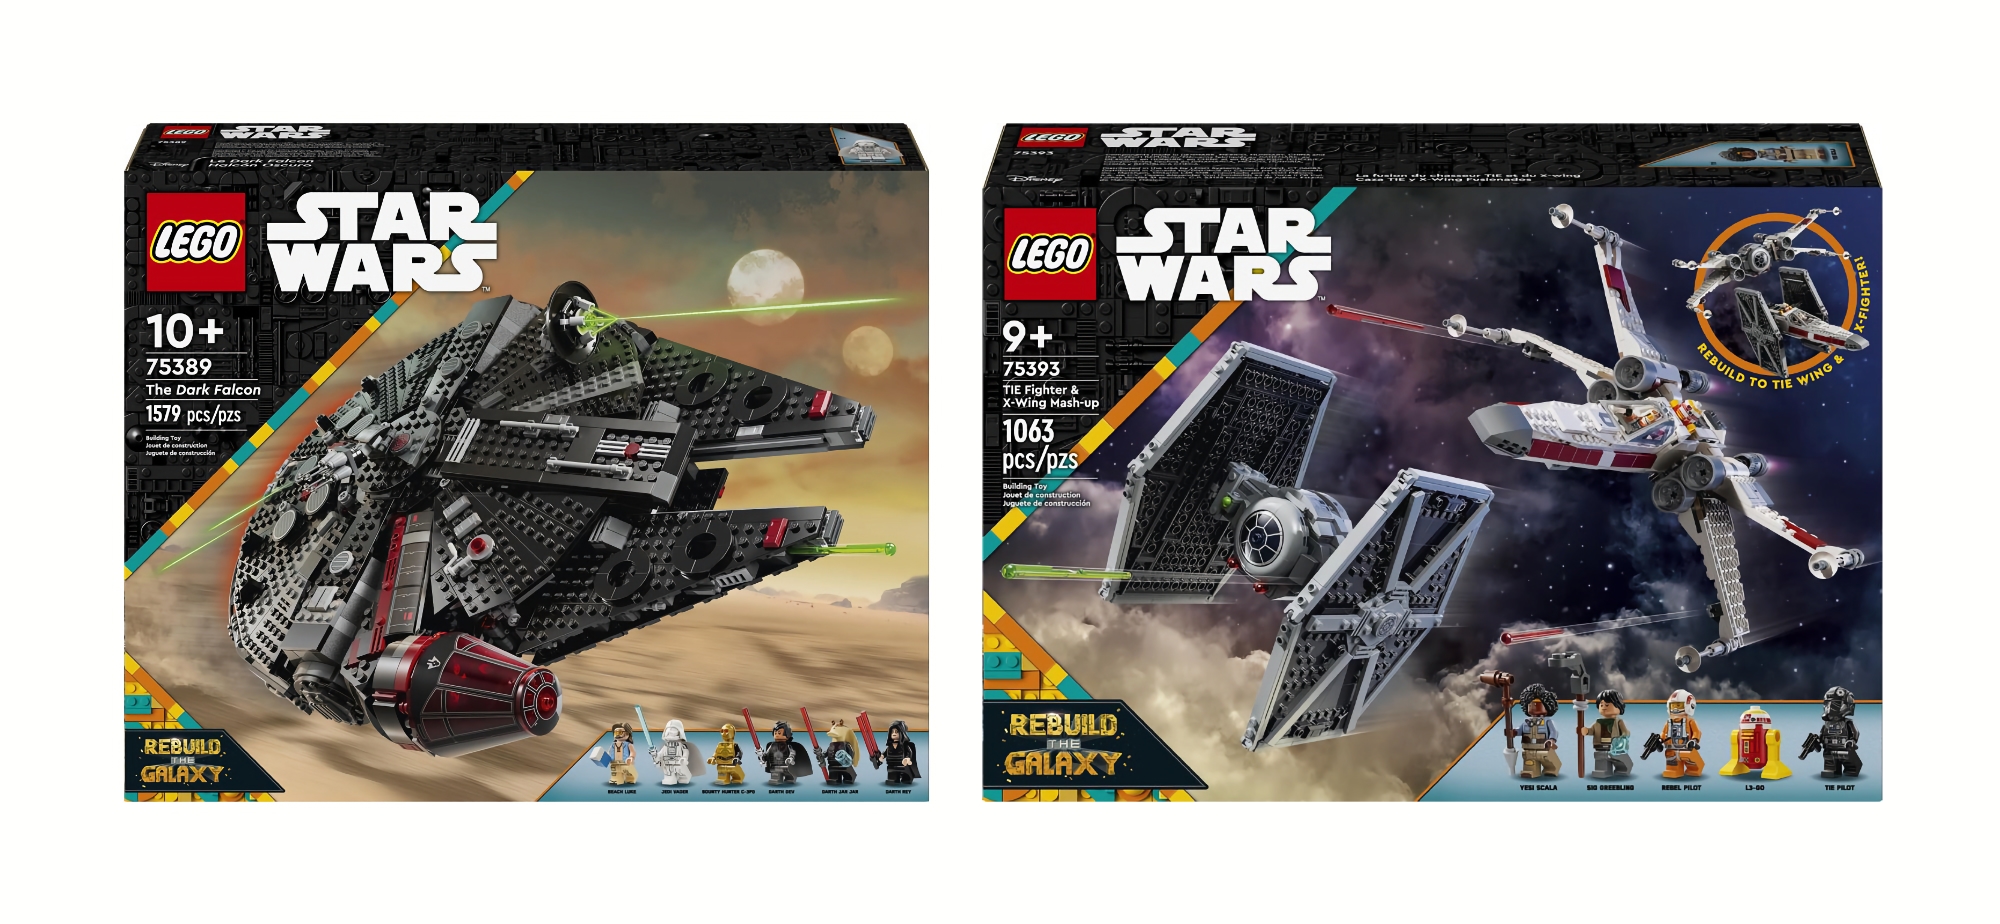 Der Dunkle Falke und TIE Fighter & X-Wing Mash-up: LEGO bereitet die Veröffentlichung von zwei Star Wars: Rebuild the Galaxy Sets vor